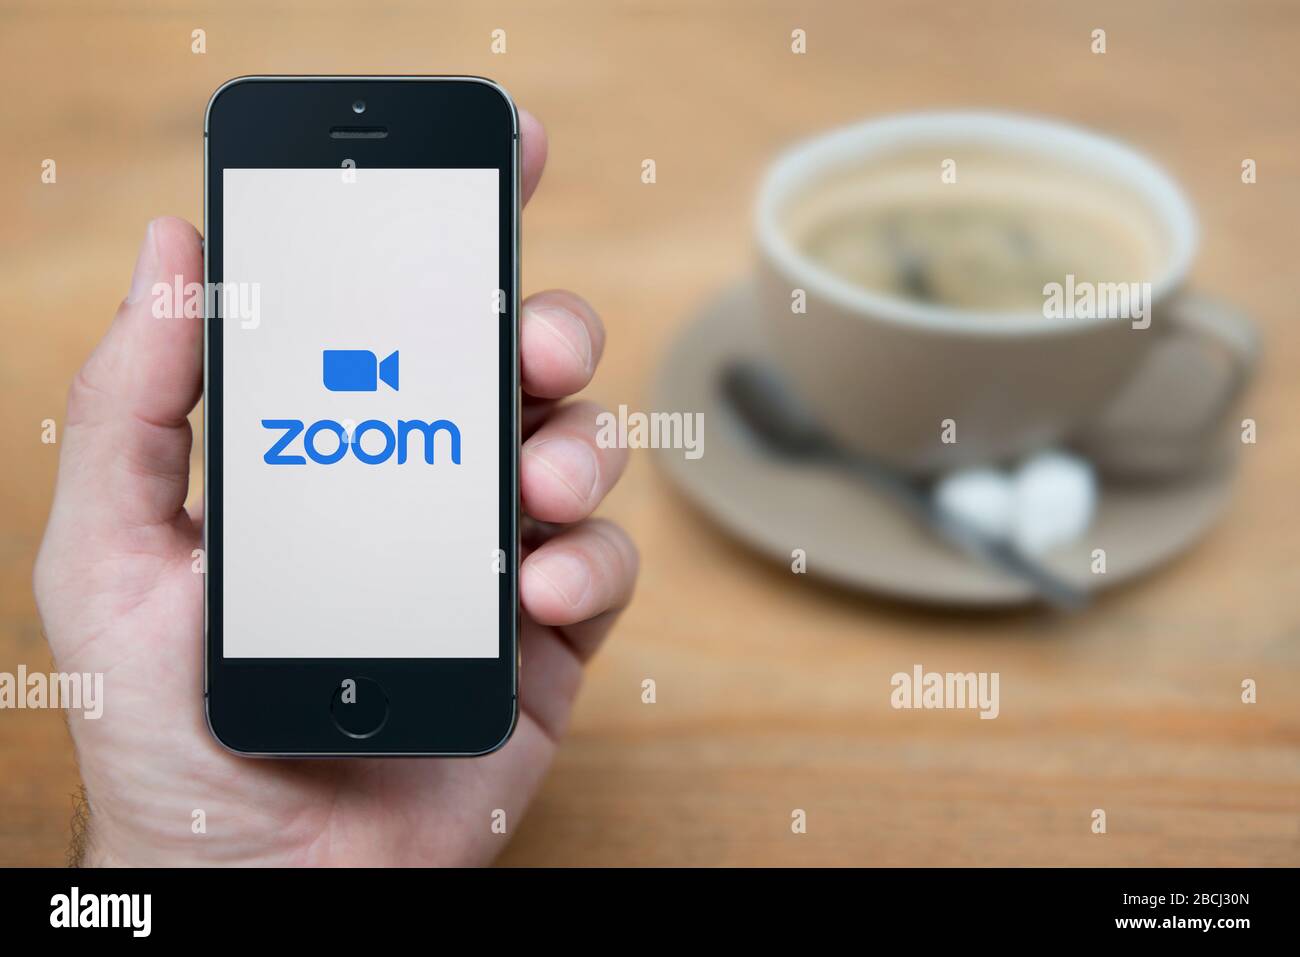 Ein Mann betrachtet sein iPhone, auf dem das Logo für Videokonferenzen Zoom angezeigt wird (nur redaktionelle Verwendung). Stockfoto